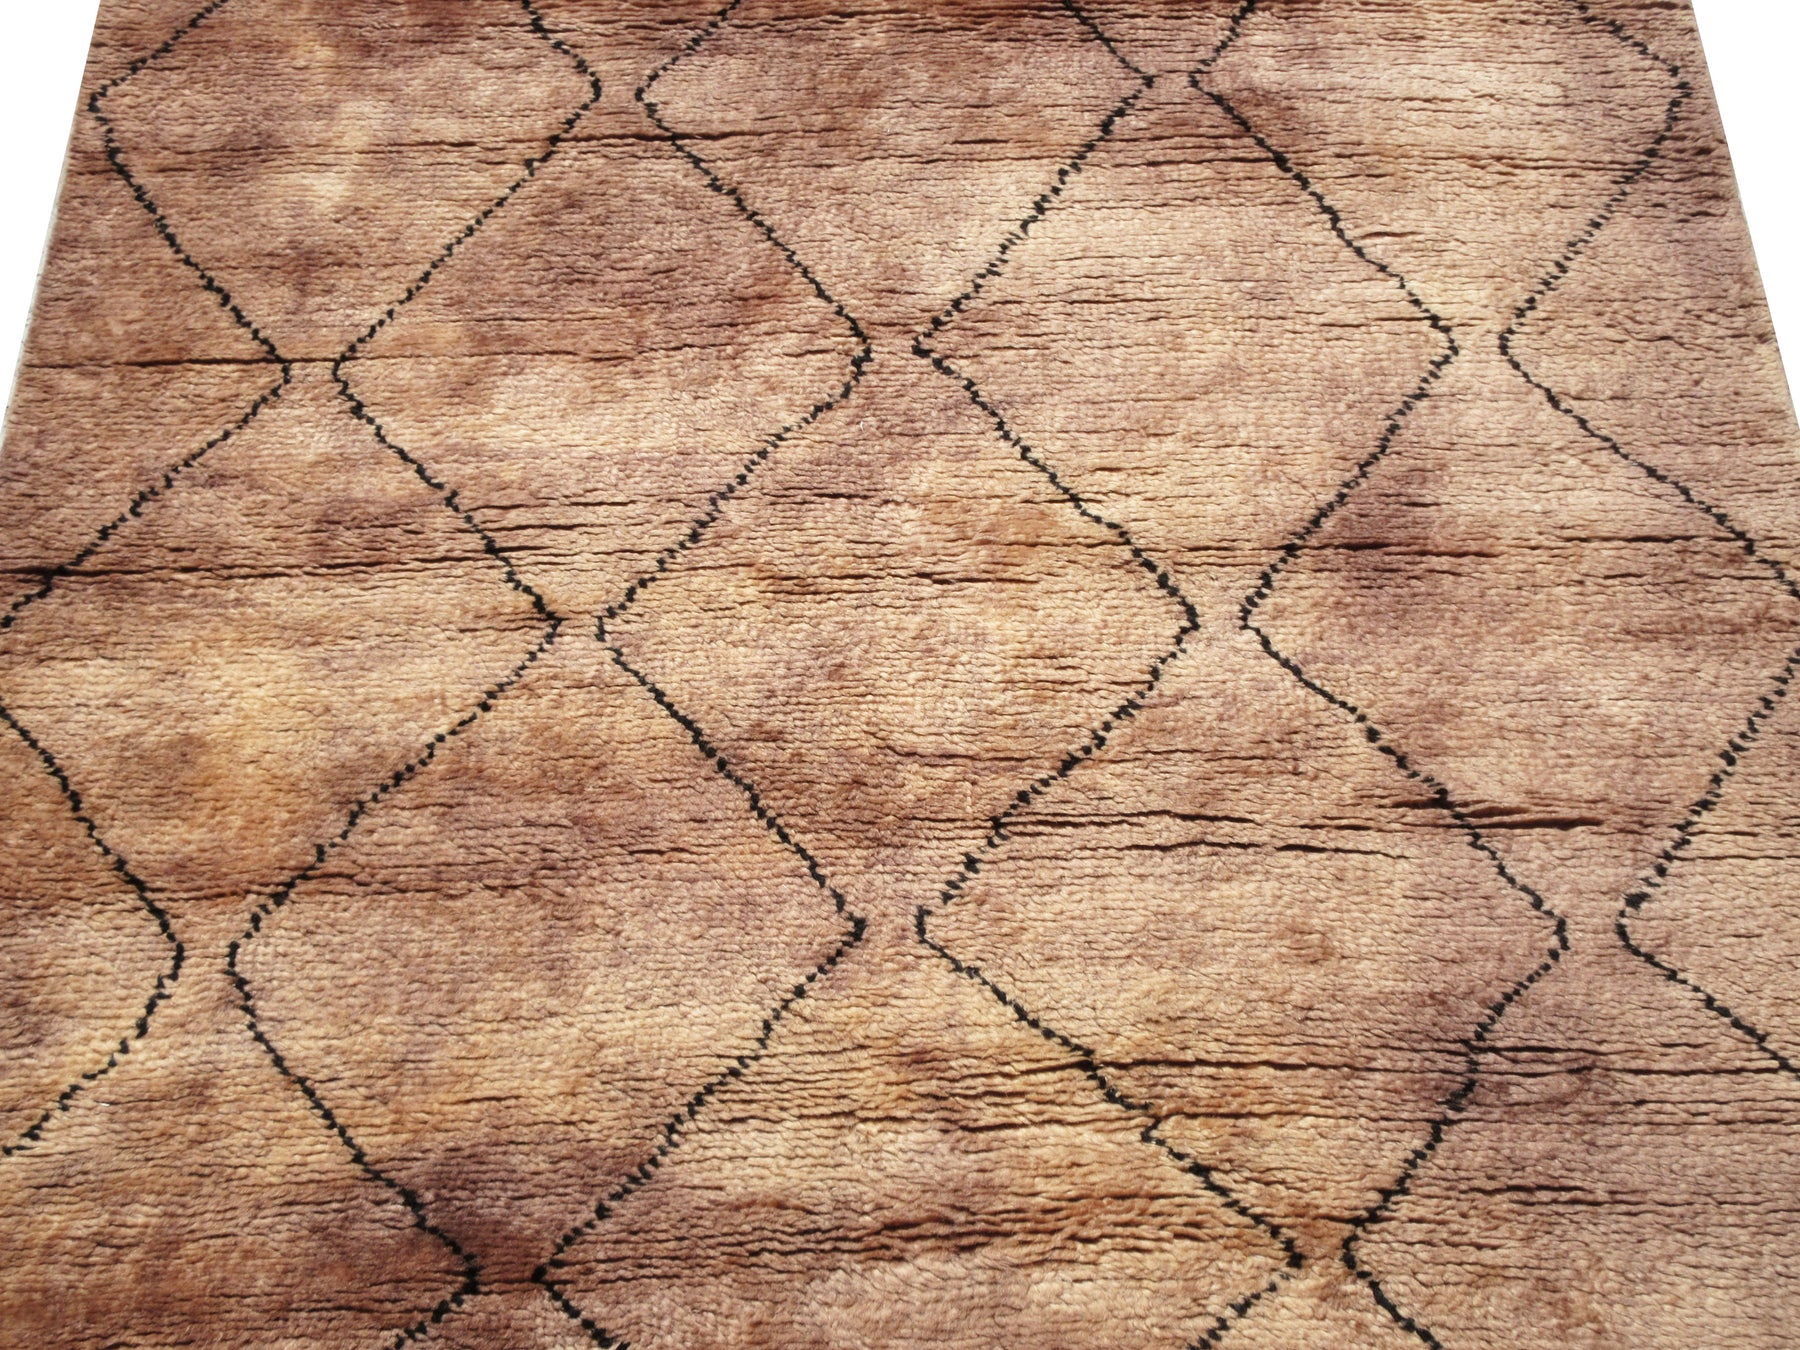 Geometric Modern Moroccan Handmade Oriental Area Rug Indoor/ Outdoor Carpet  6x8